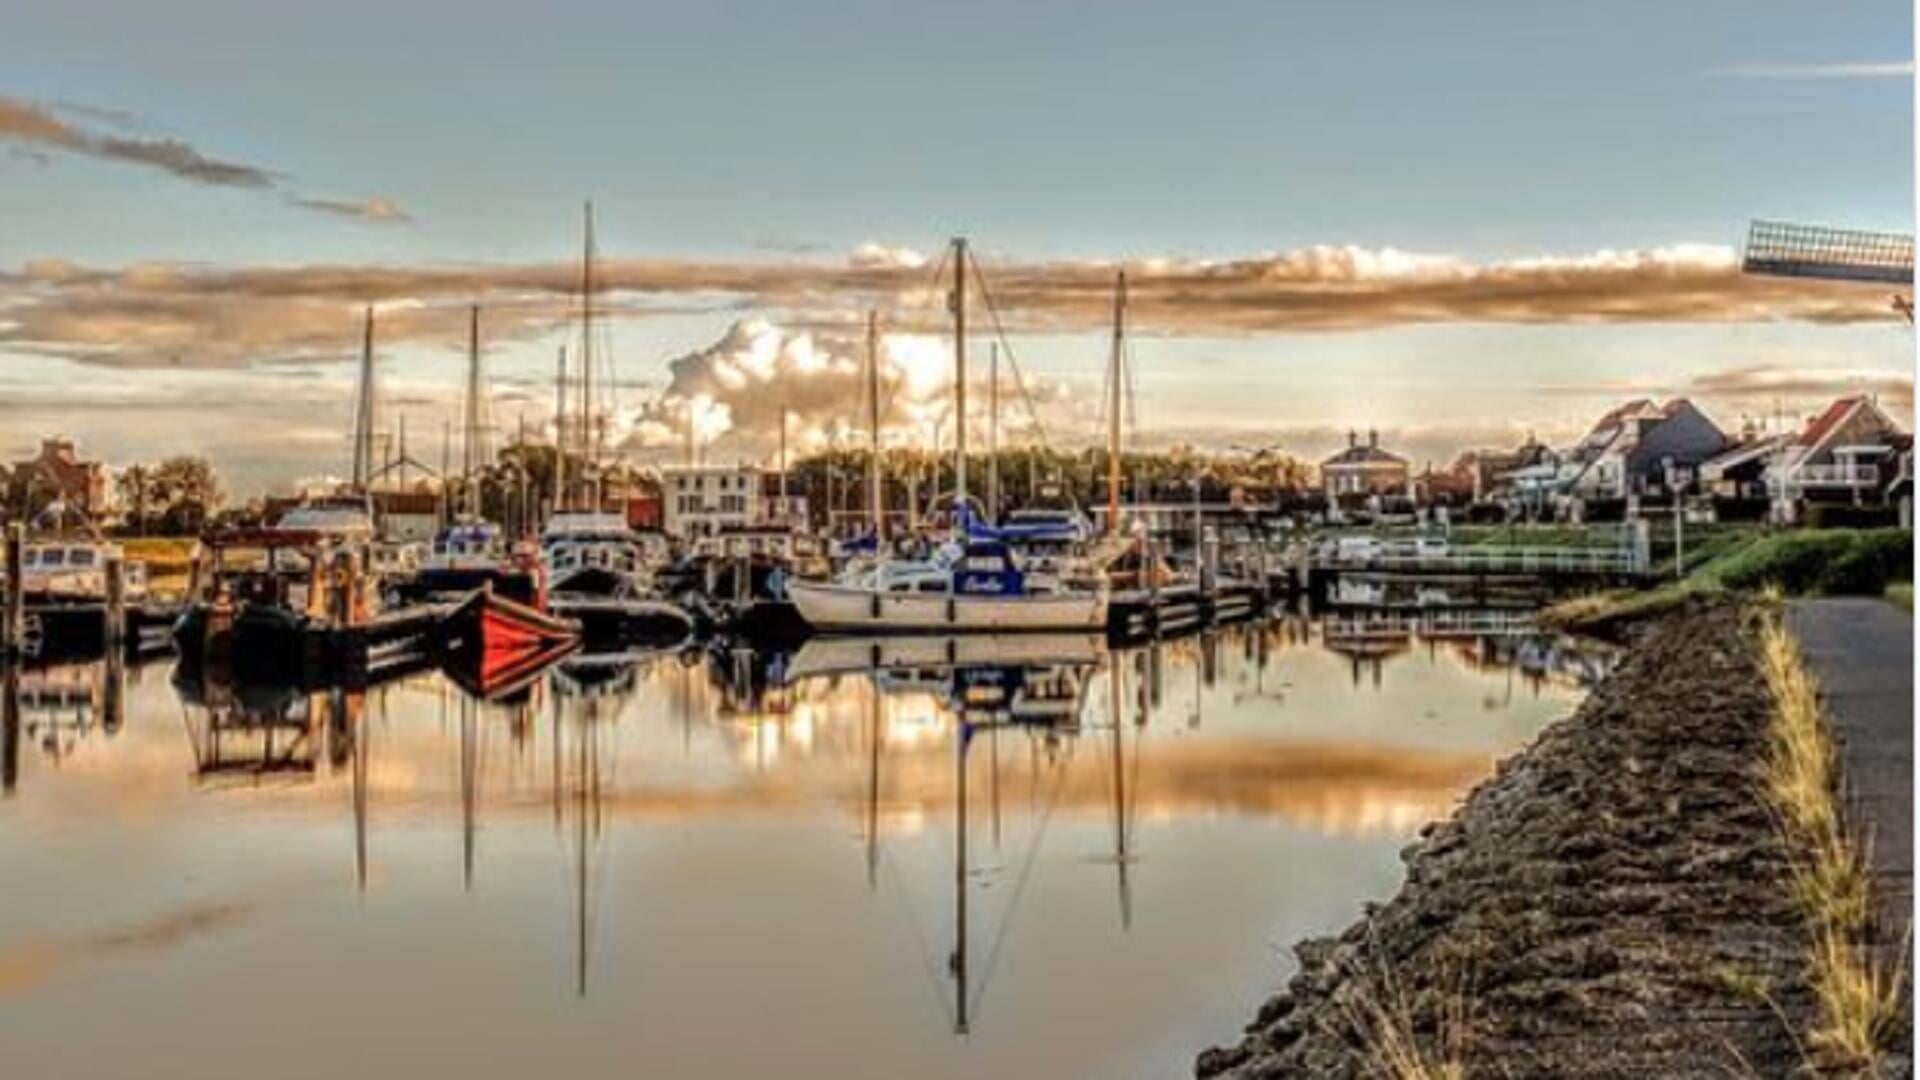 De winnende foto van vorig jaar met de haven van Stavenisse in schemerlicht.